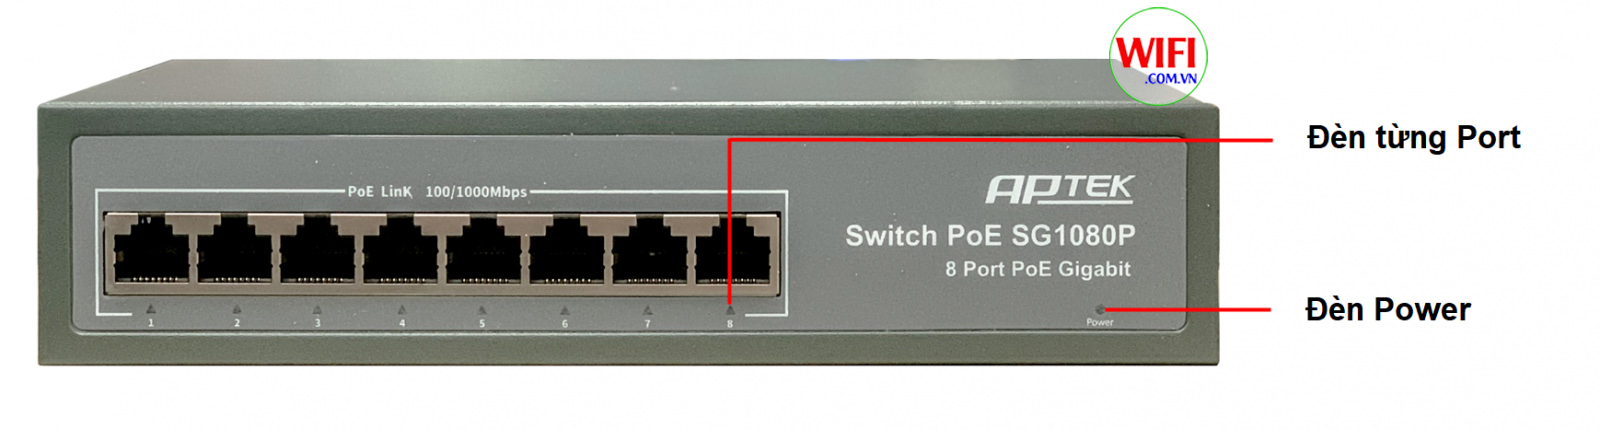 phân biệt đèn led trên switch aptek SG1080P